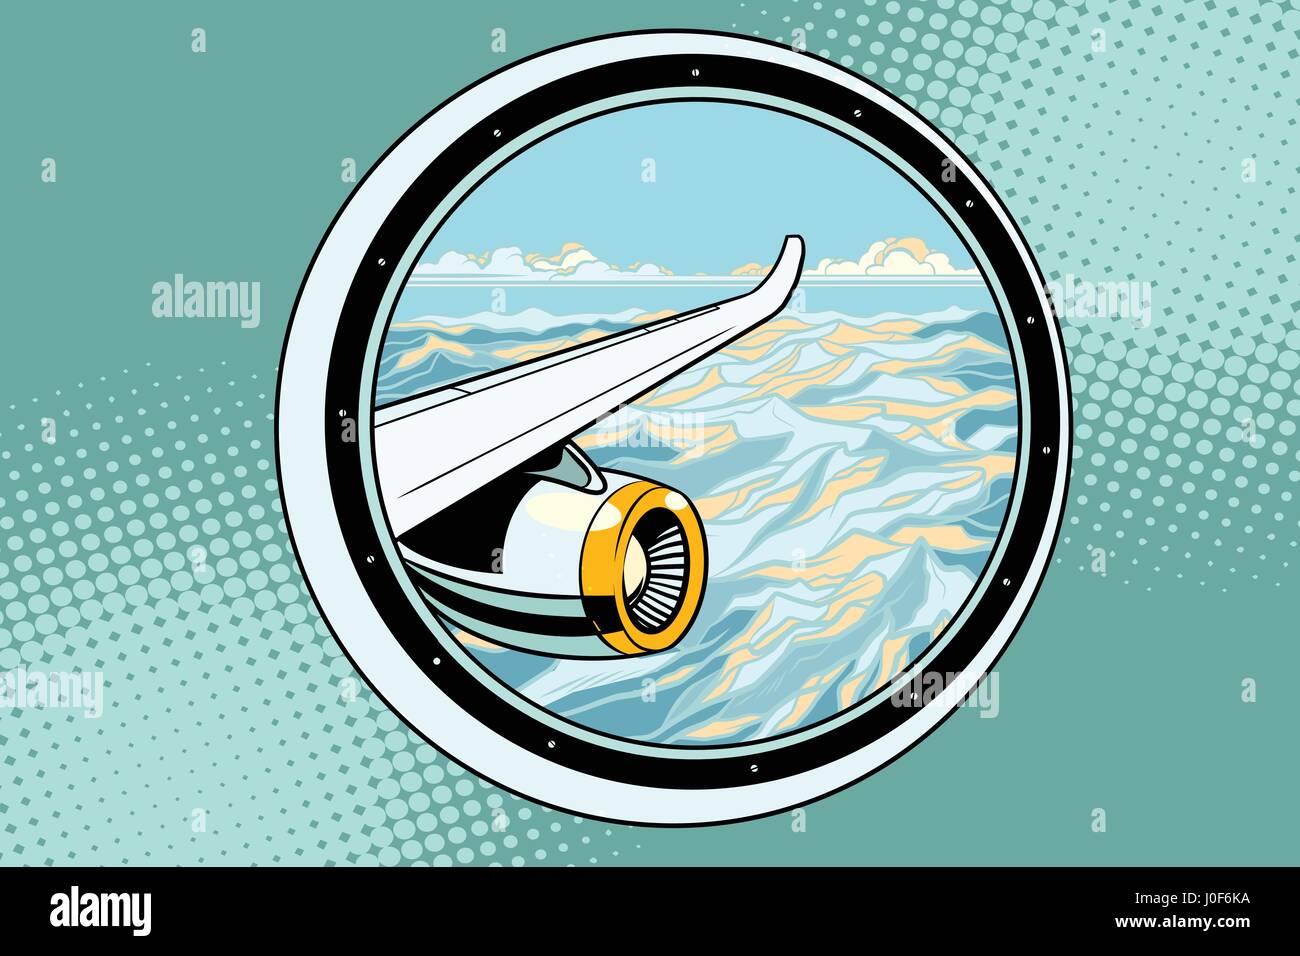 Die Flügel eines fliegenden Passagierflugzeuges. Pop-Art-Retro-Vektor-illustration Stock Vektor